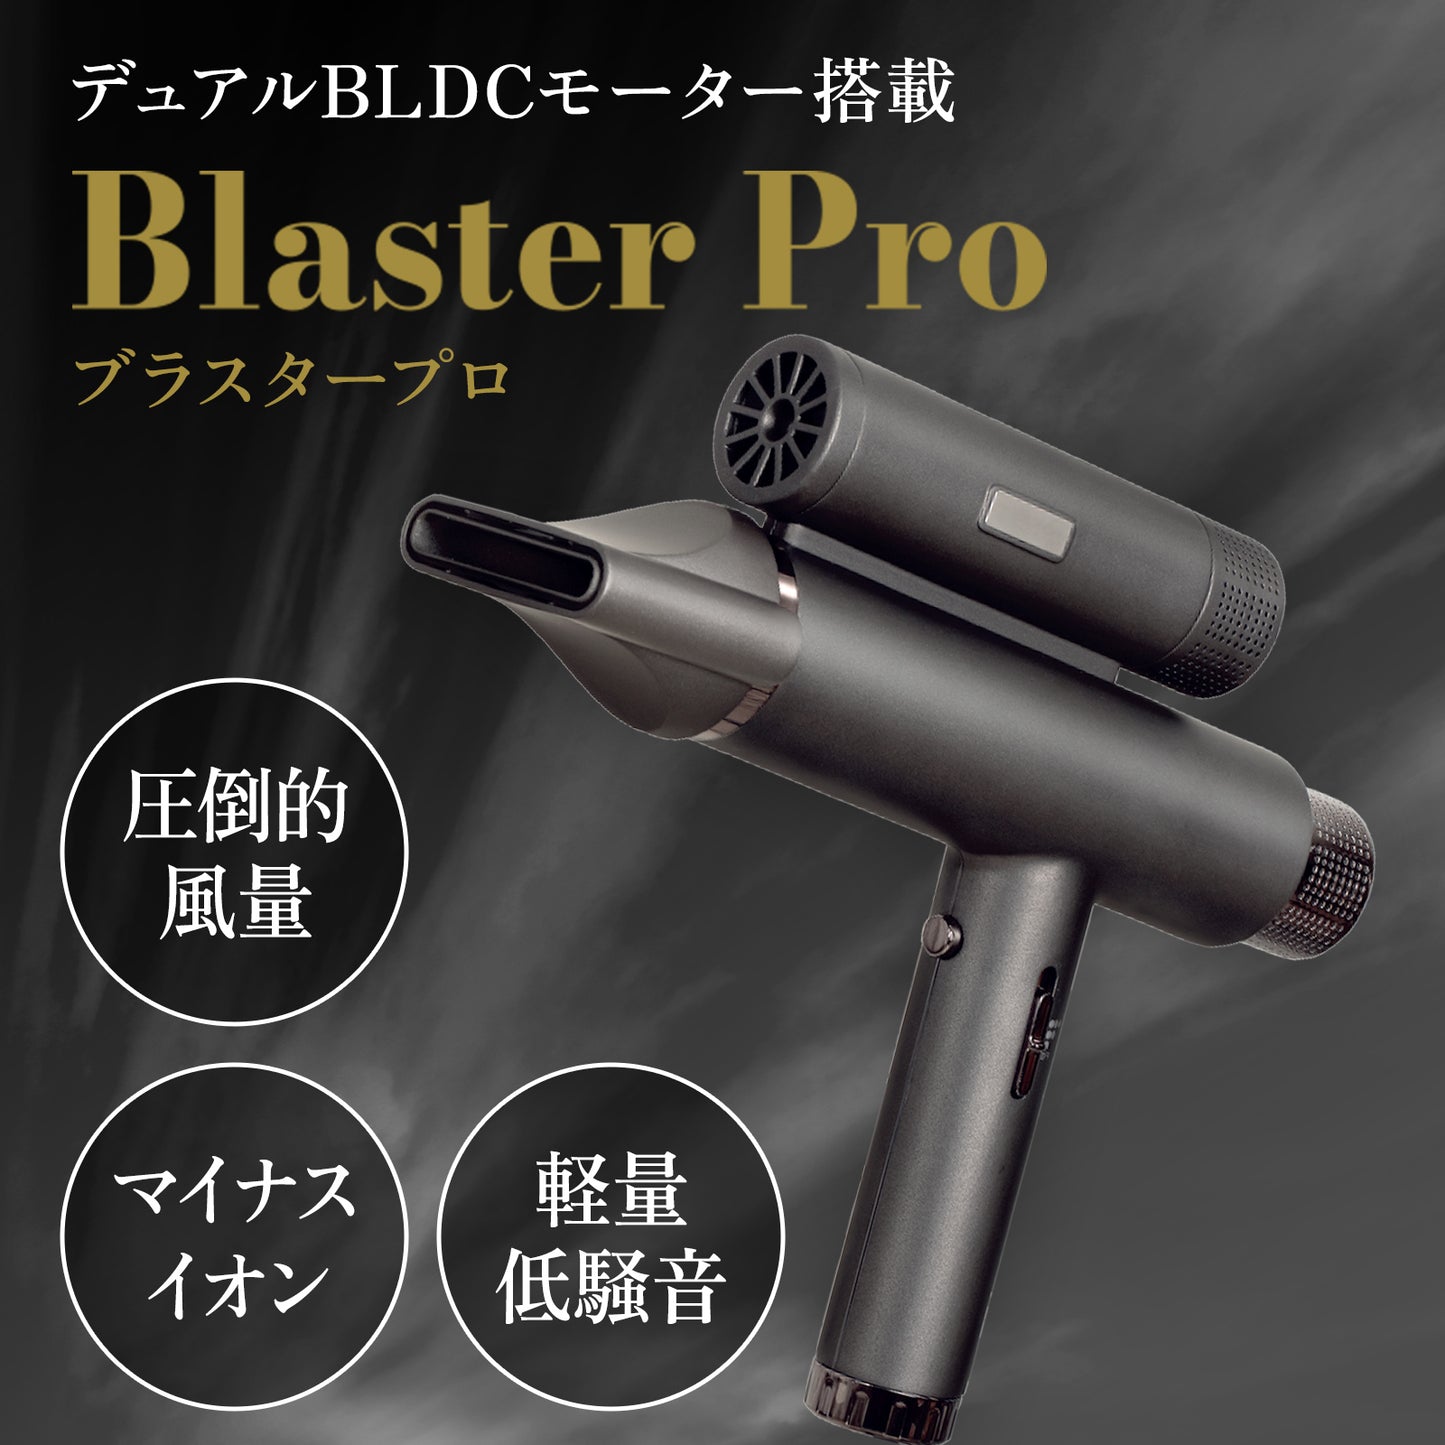 Blaster Pro（ブラスタープロ）